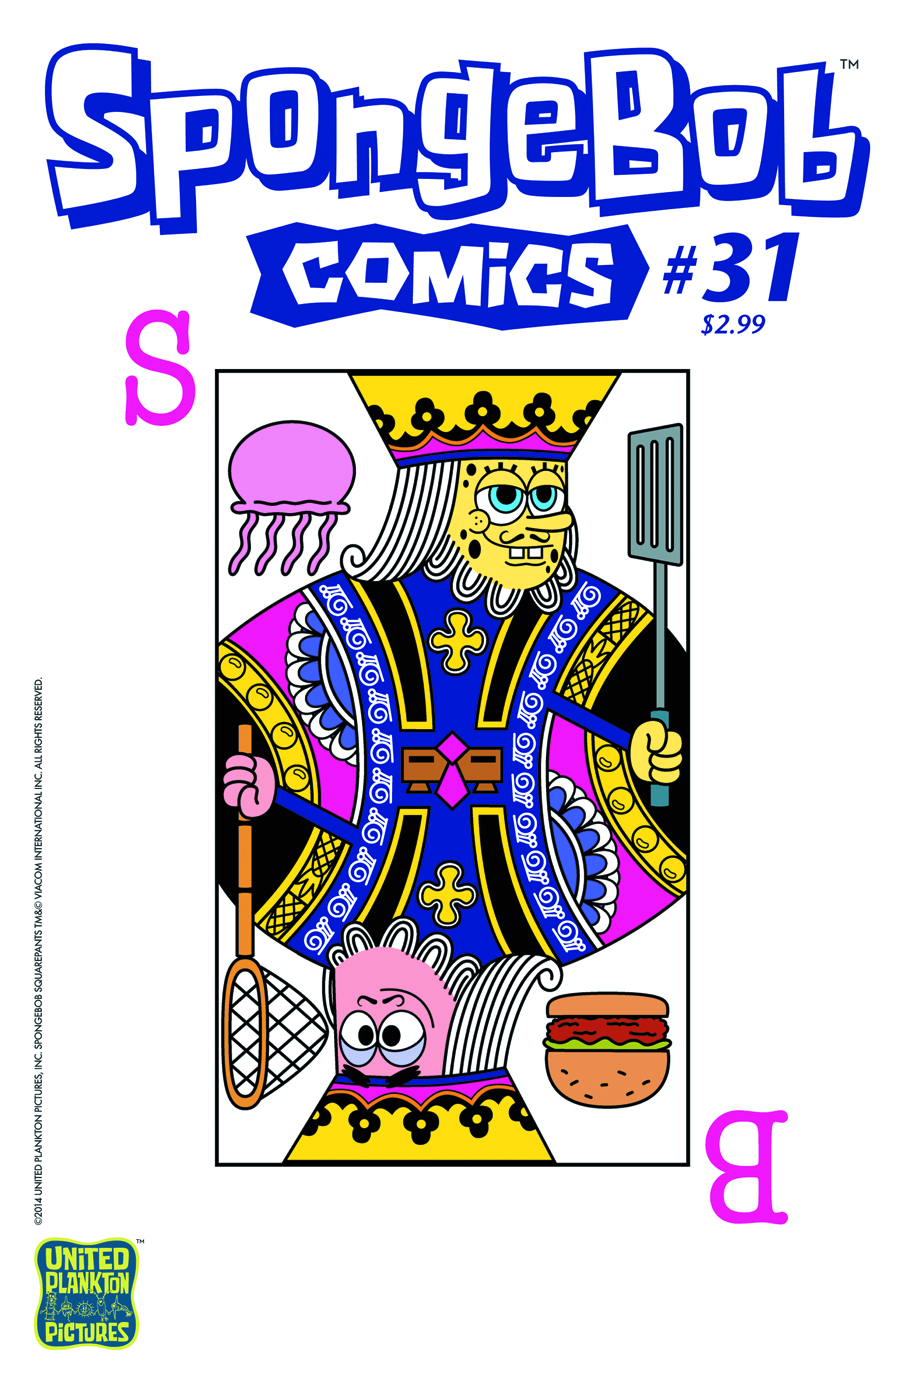 SPONGEBOB COMICS #31